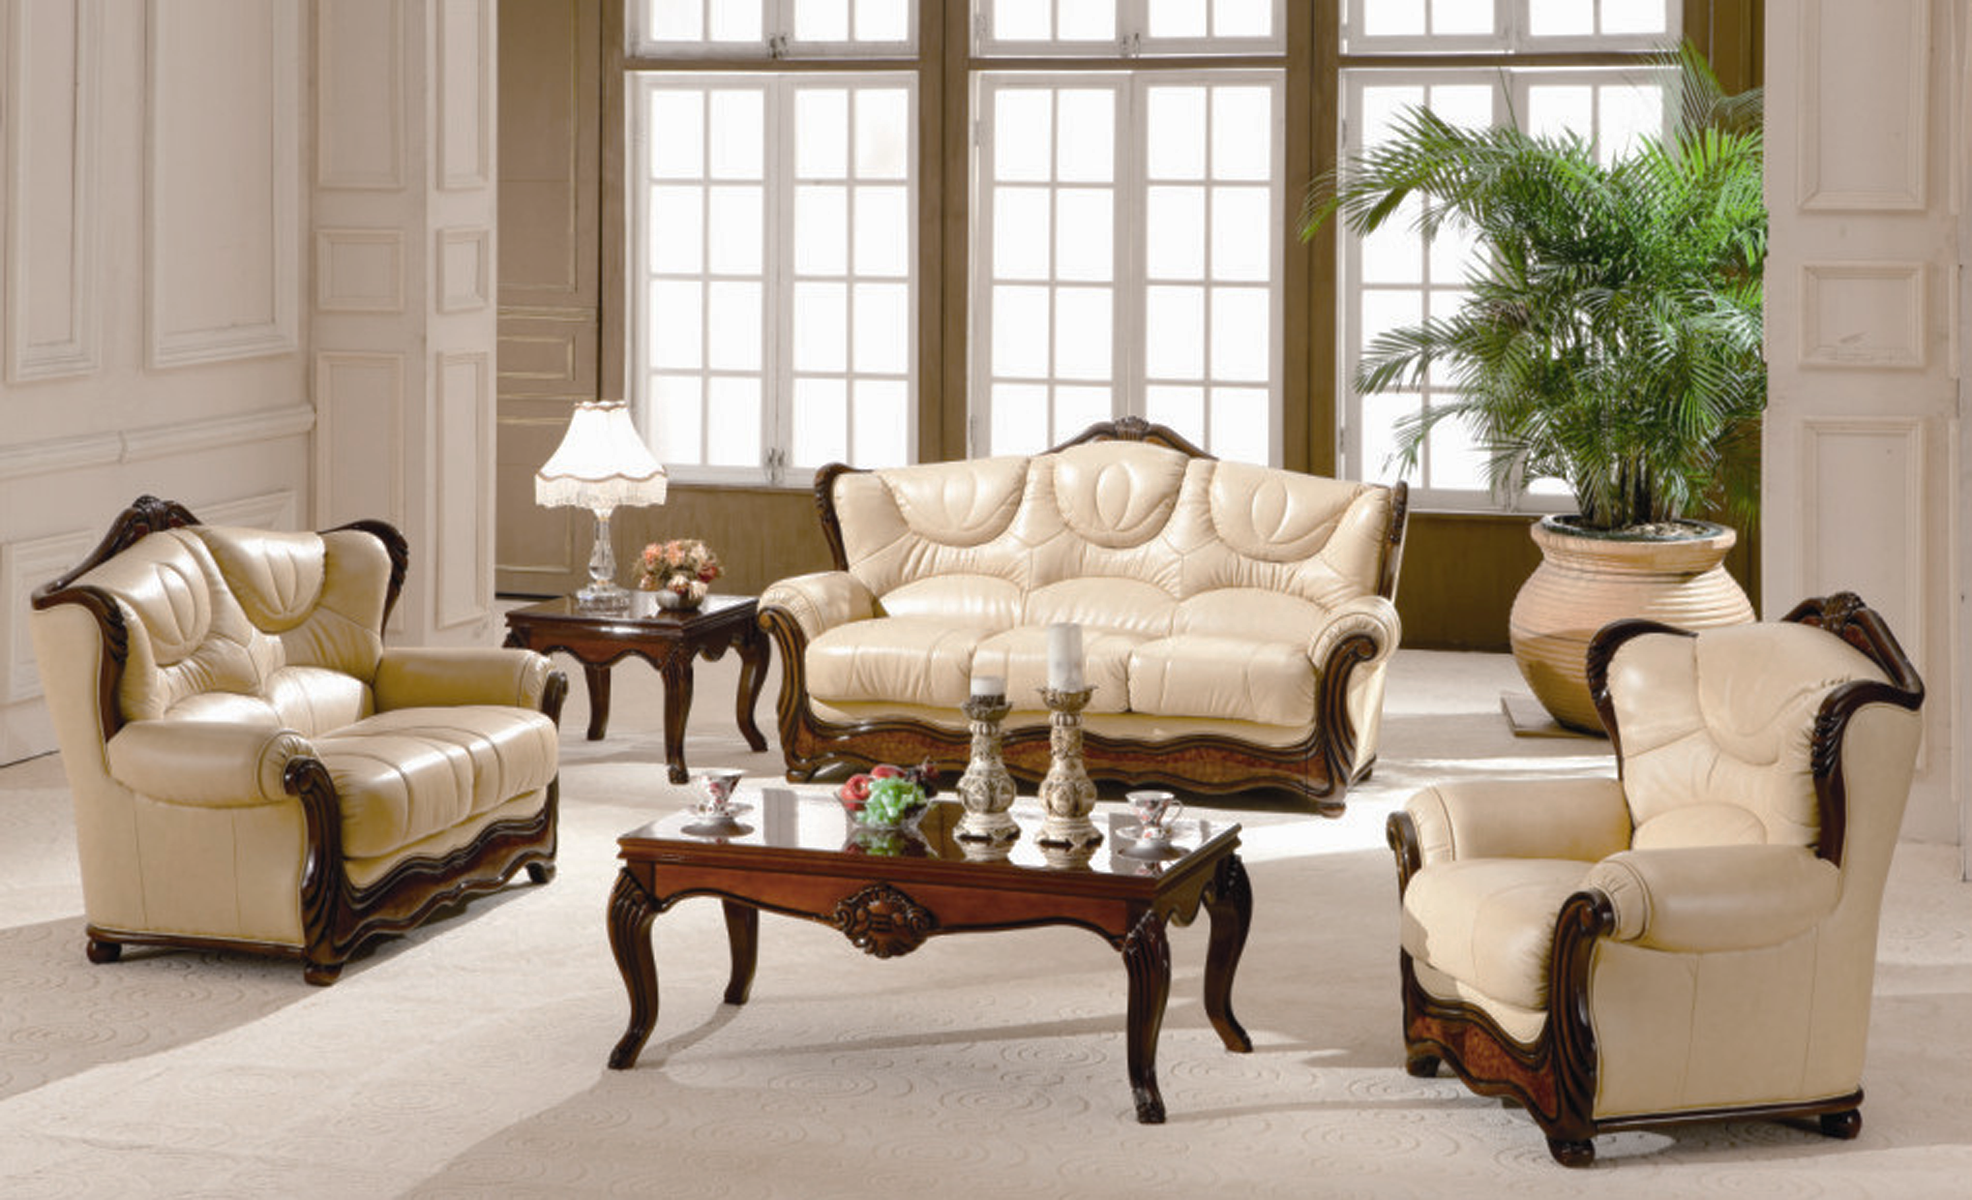 Фирма мебели диванов. Мягкая мебель. Красивые диваны. Кожаная мебель в интерьере. Китайская мягкая мебель.